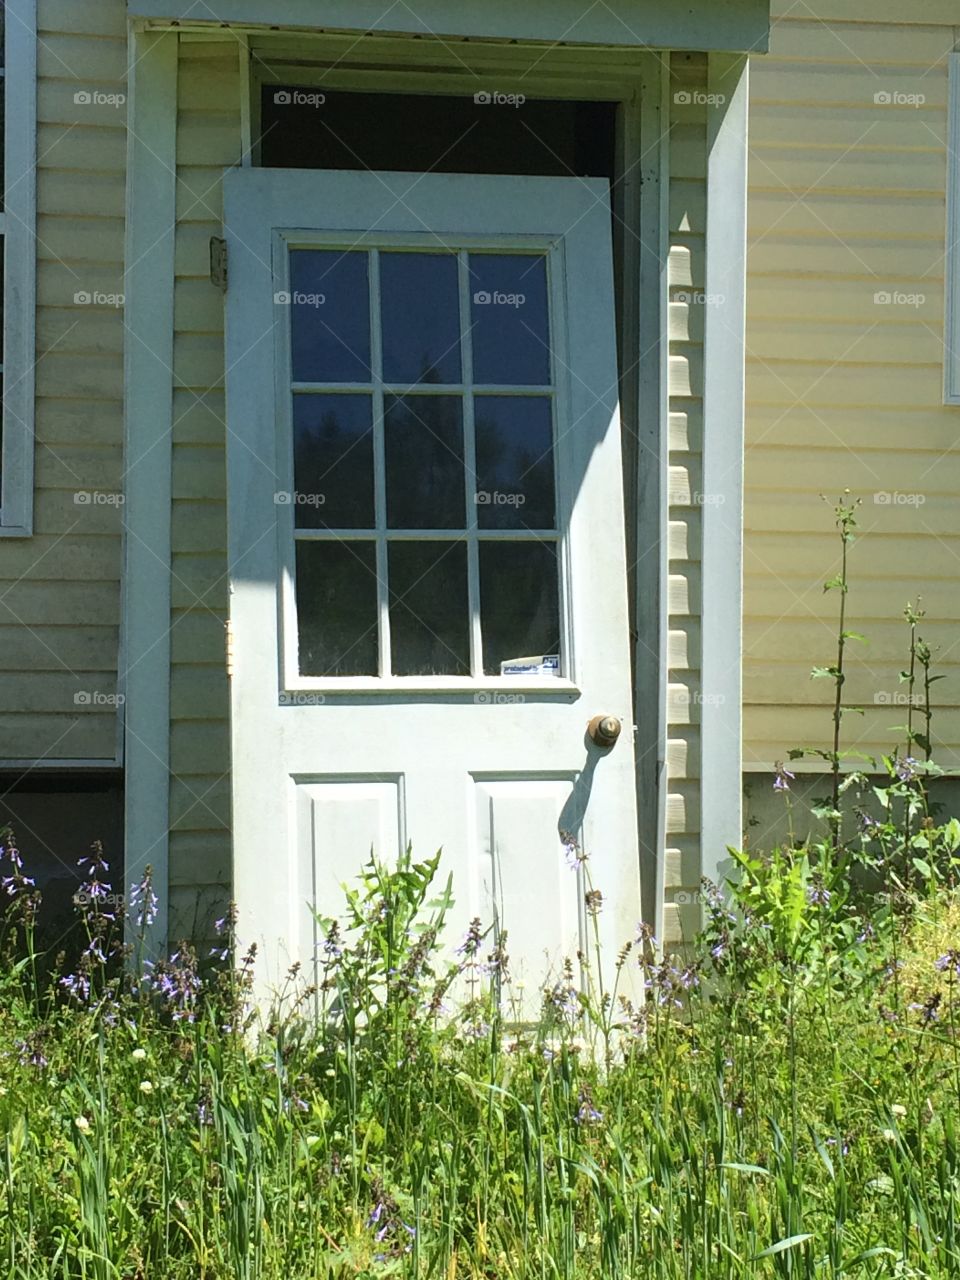 Forgotten door in spring time